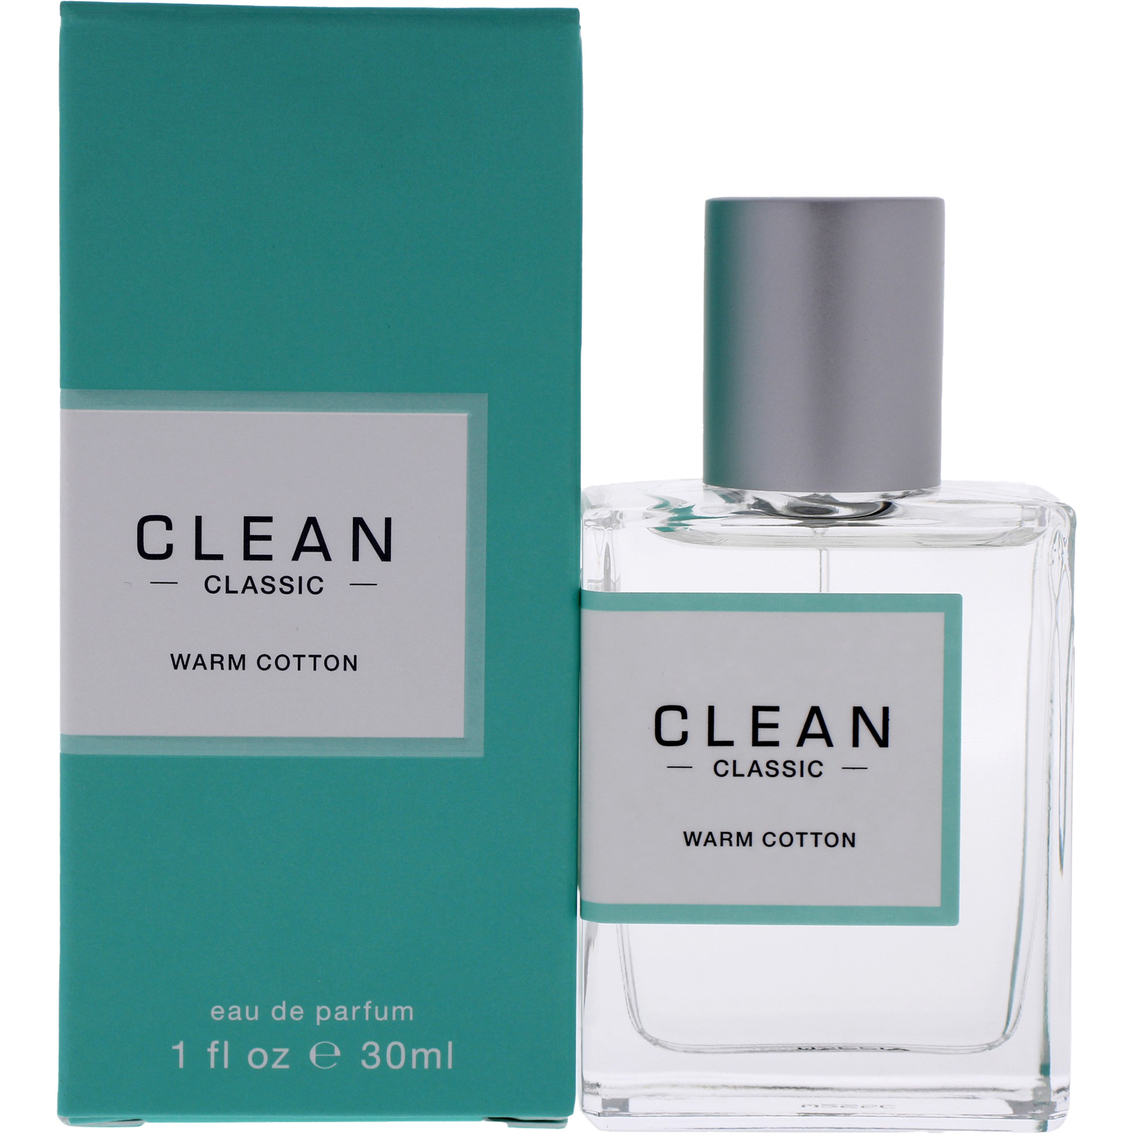 Classic Warm Cotton by Clean for Women Eau de Parfum Spray 1 oz. - Image 2 of 2